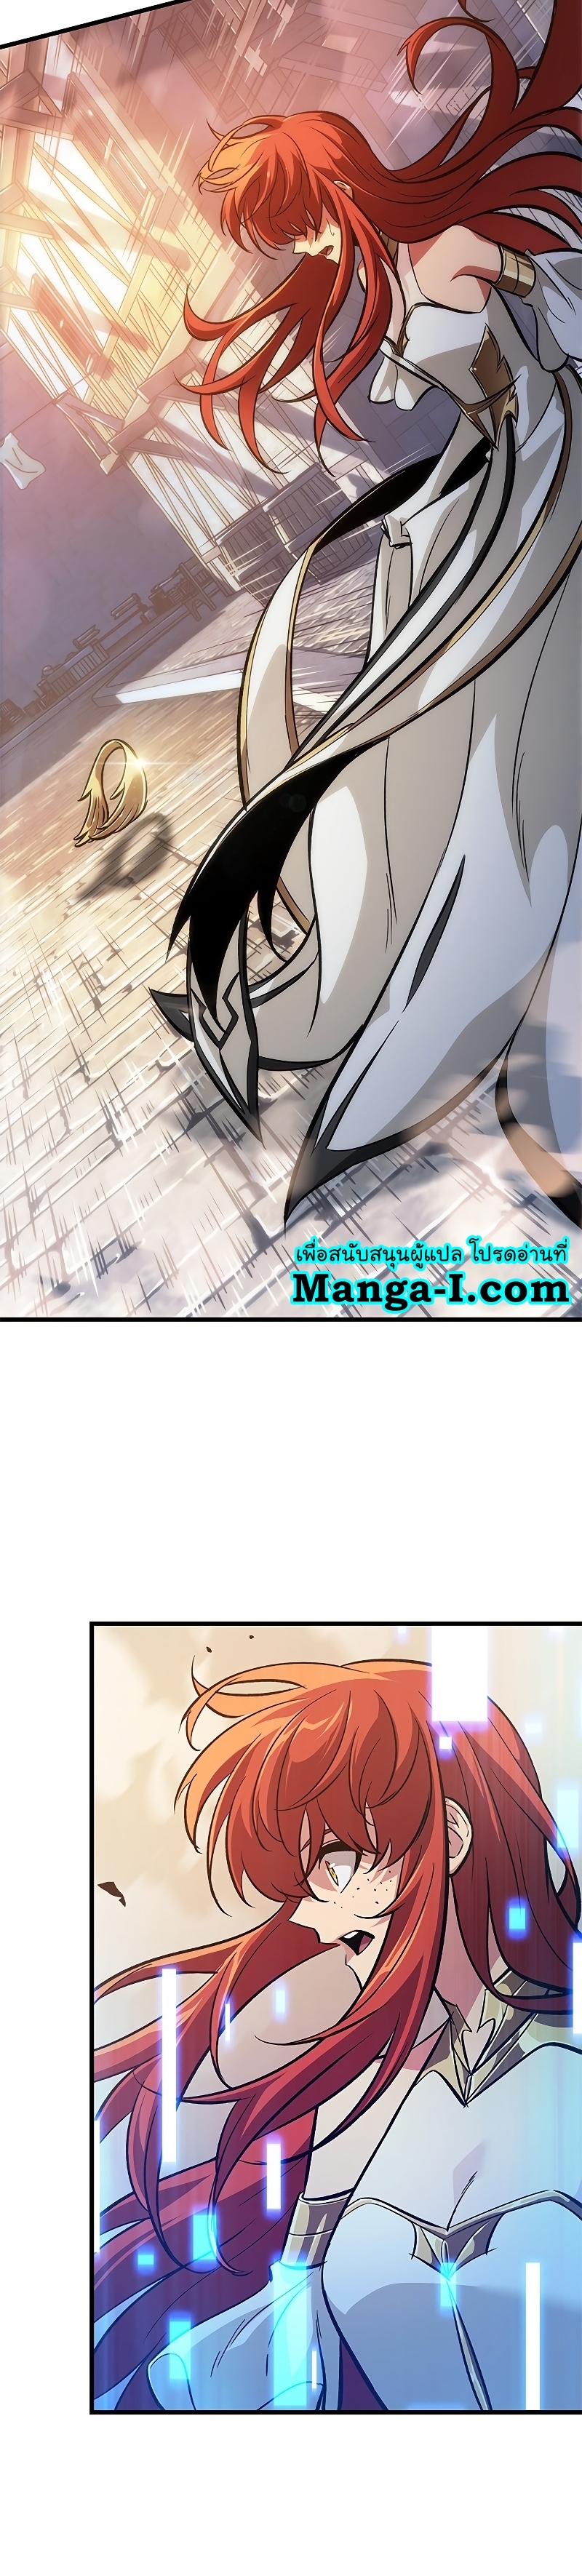 Manga I Manwha Pick Me 54 (29)